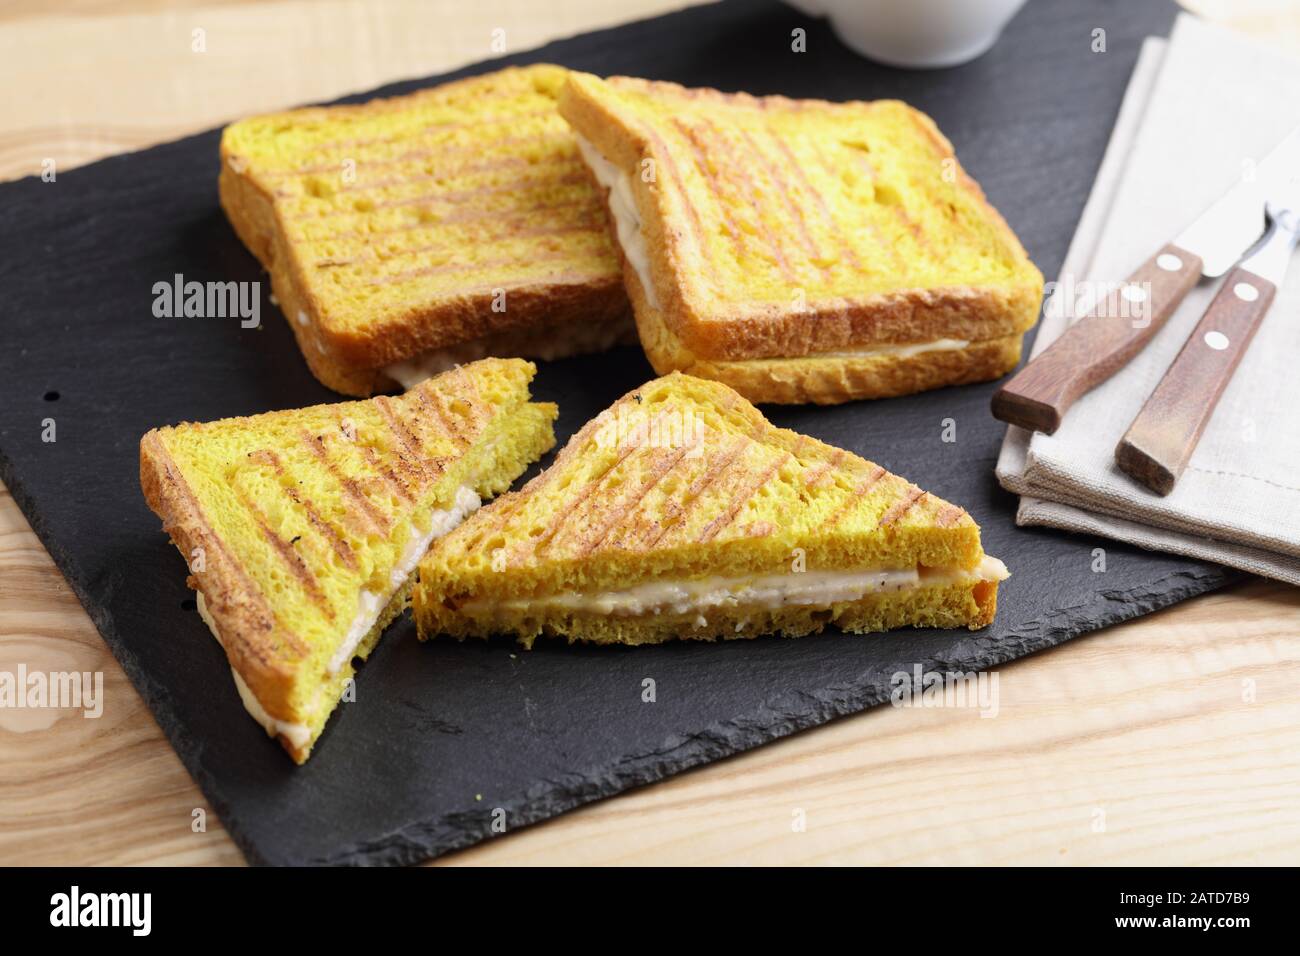 Sandwichs grillés au jambon et au fromage sur une planche à découper en ardoise. Le pain grillé avec curcuma donne une couleur jaune vif Banque D'Images